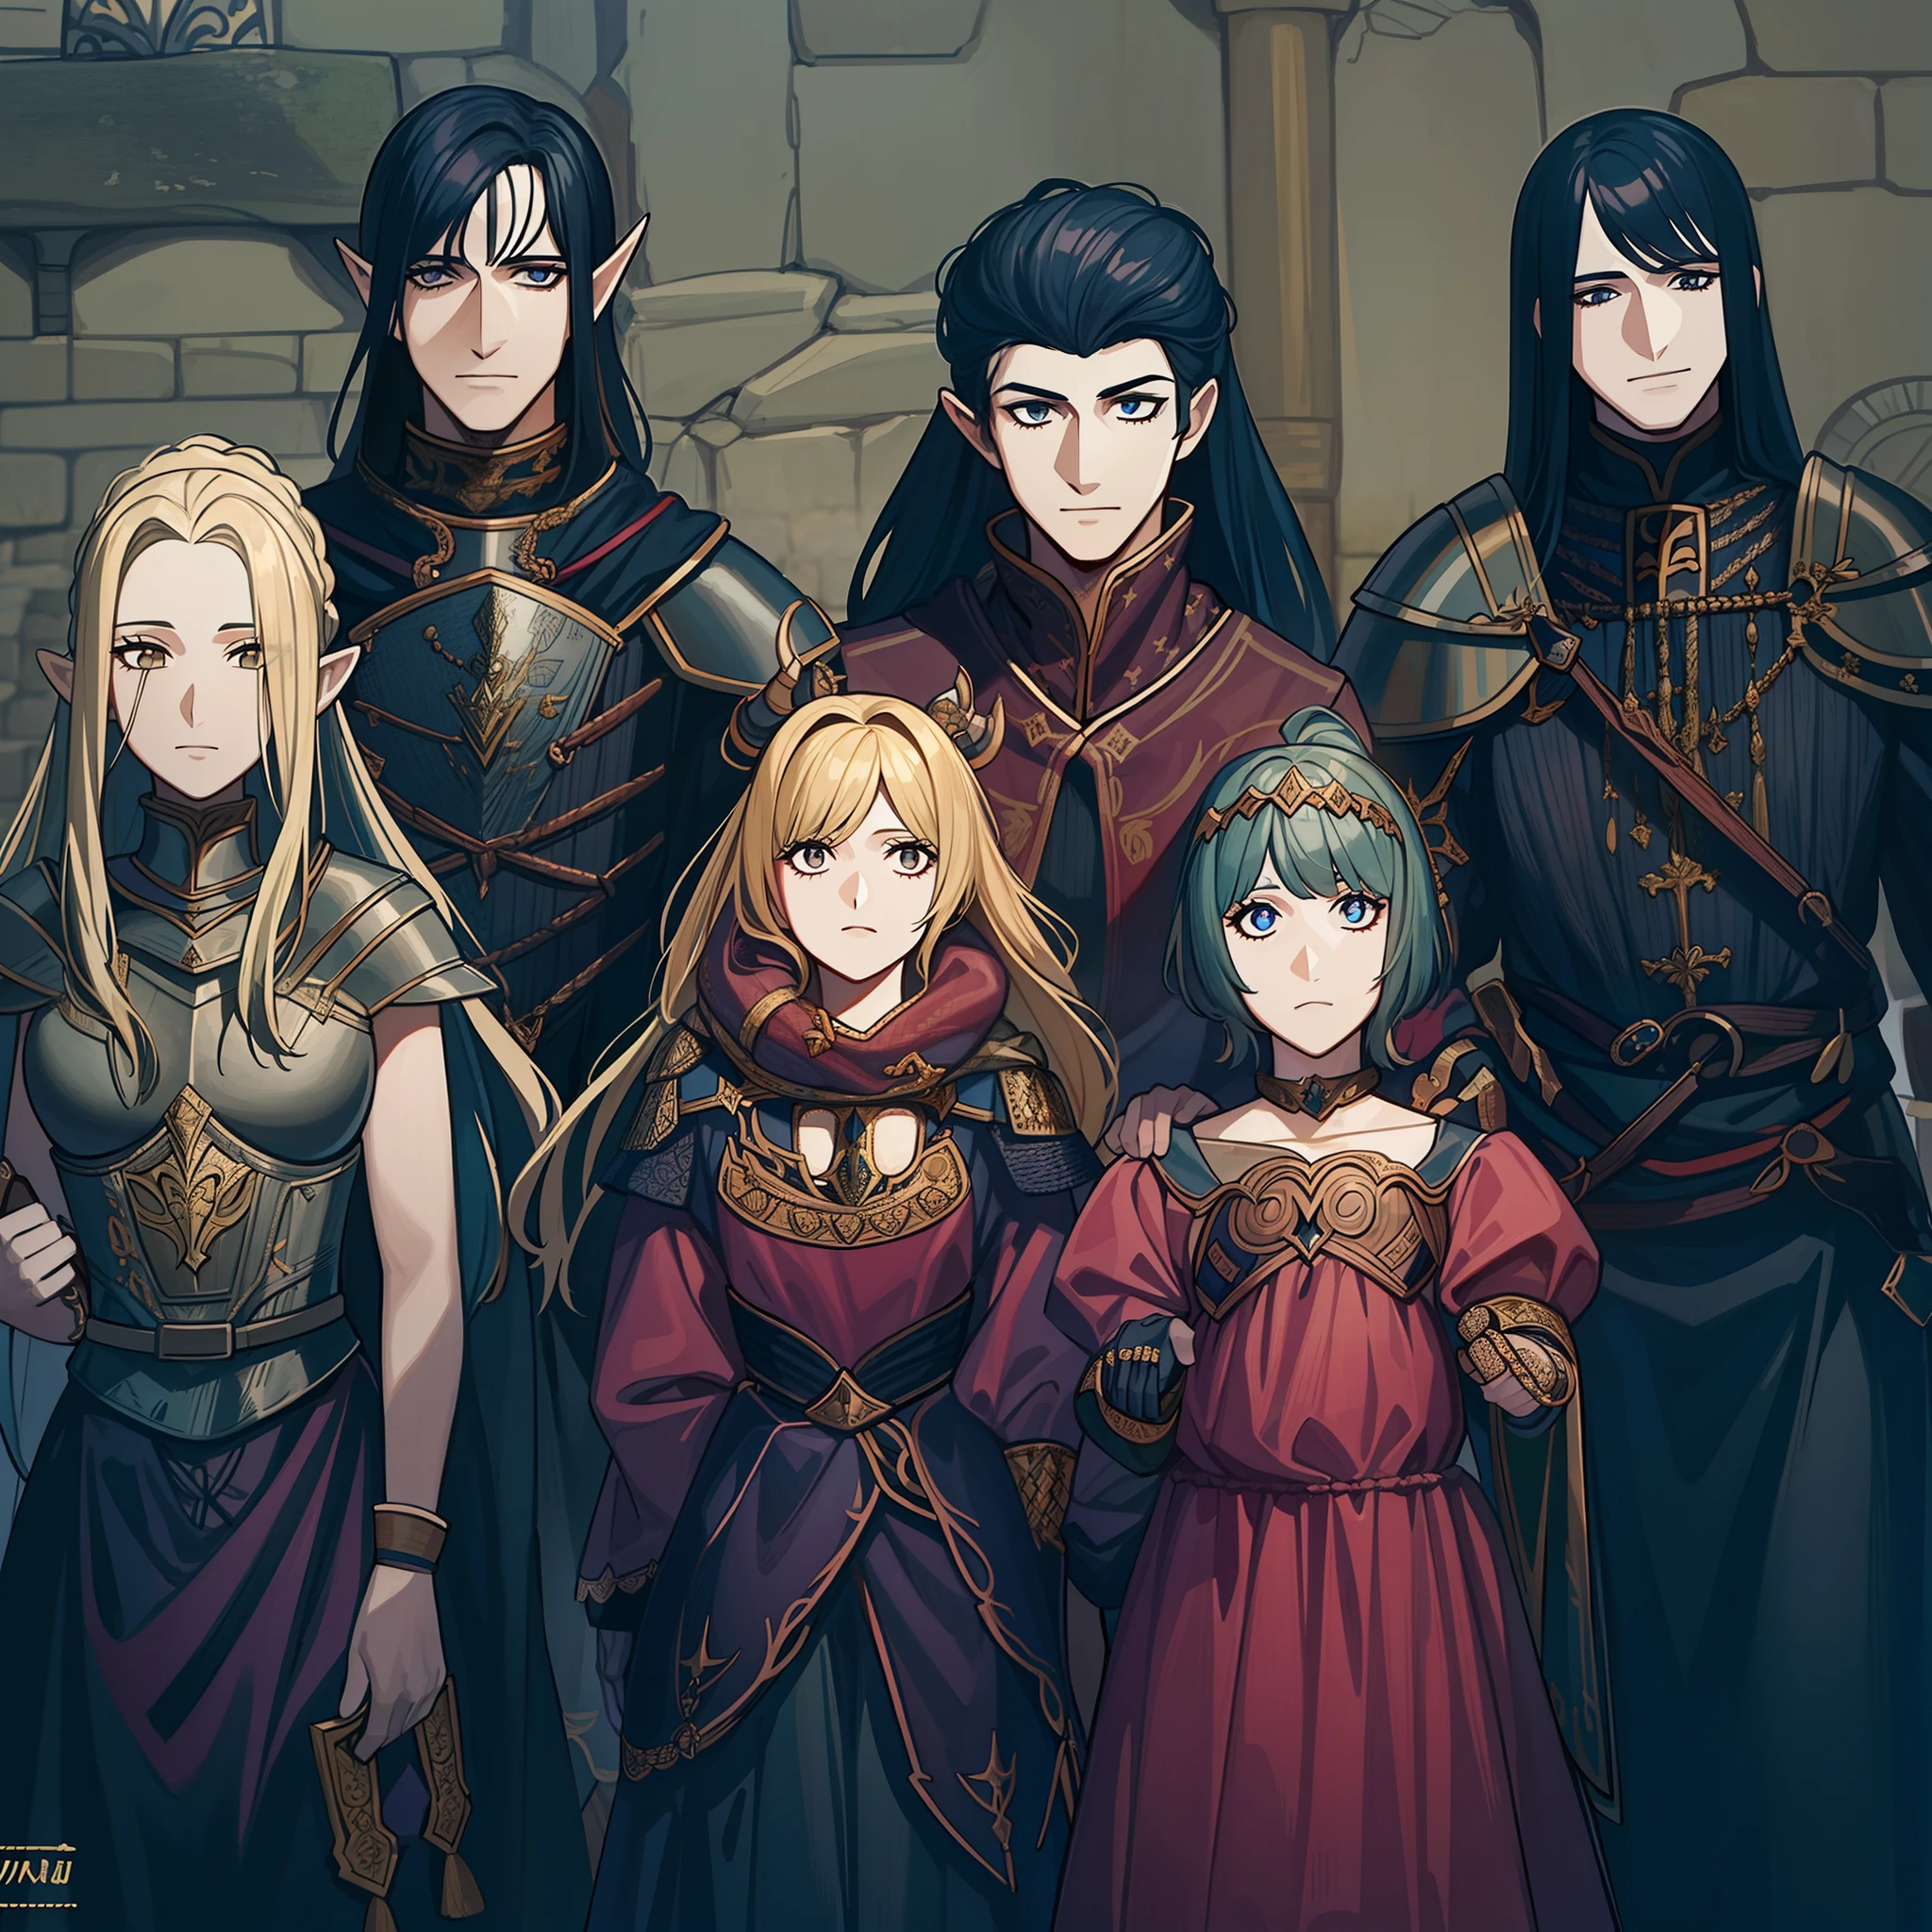 una fotografía de una familia en la época medieval,4 elfos menores con otros 2 elfos como padres,la mujer elfa con armadura roja y el padre elfo con una mirada tranquila, estilo manga dark